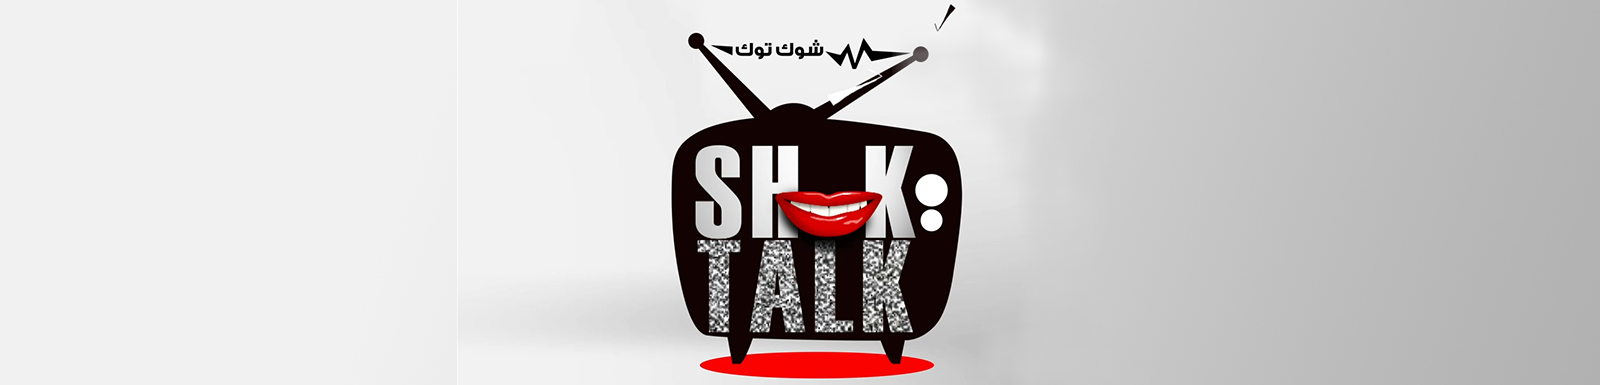 تحميل برنامج شوك توك الحلقة 21 كاملة MBC shahid شاهد نت